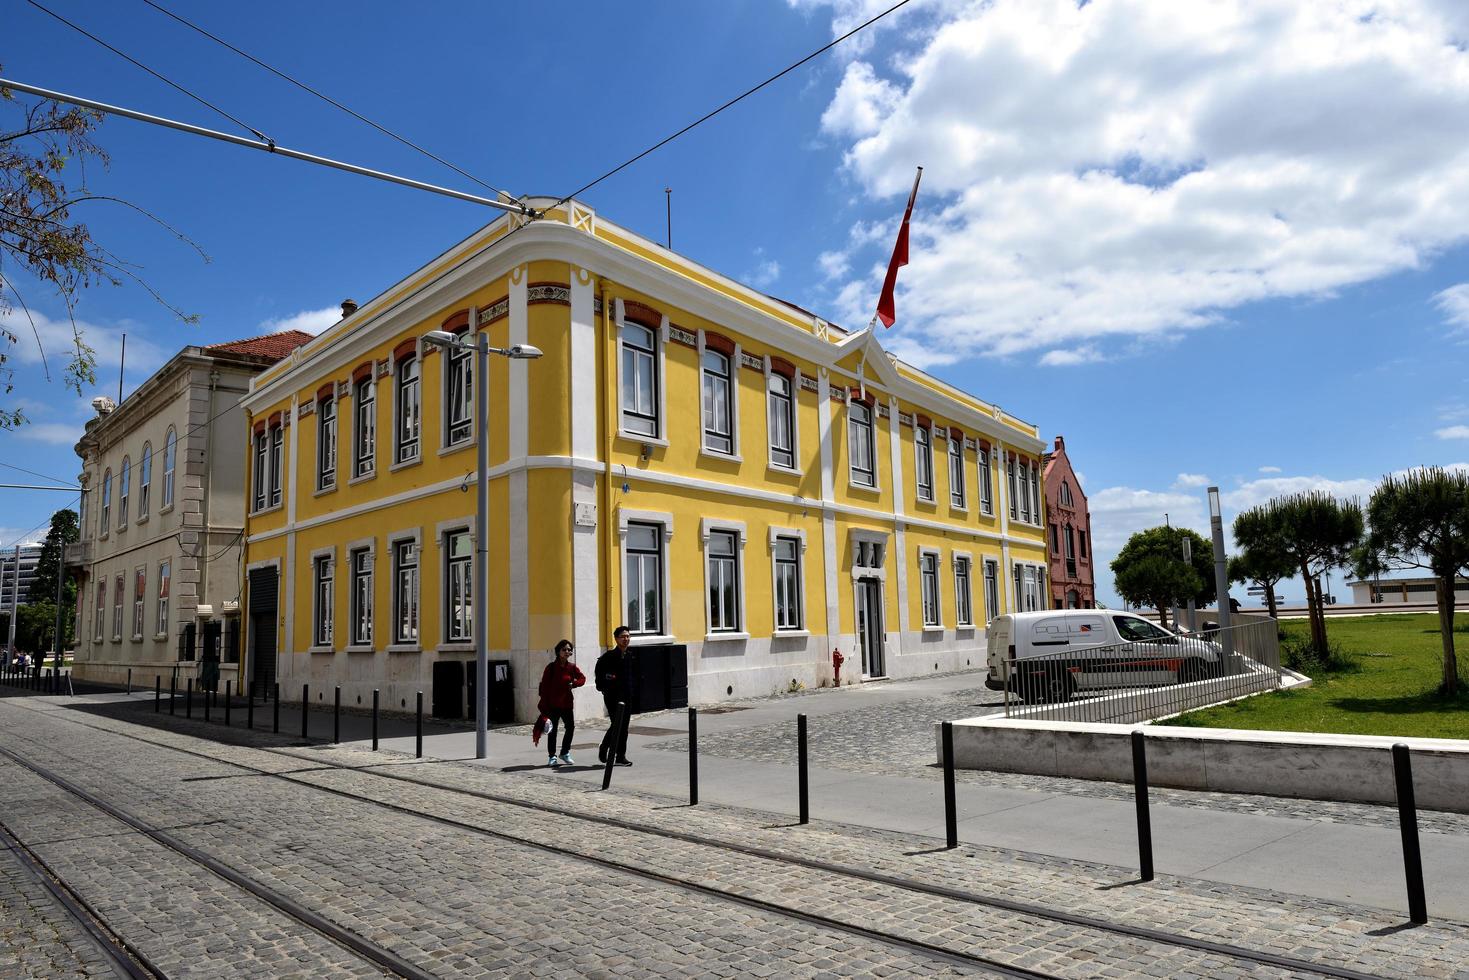 Lisbona, Portogallo - 26 aprile 2019, i turisti a piedi passano davanti a un edificio giallo foto